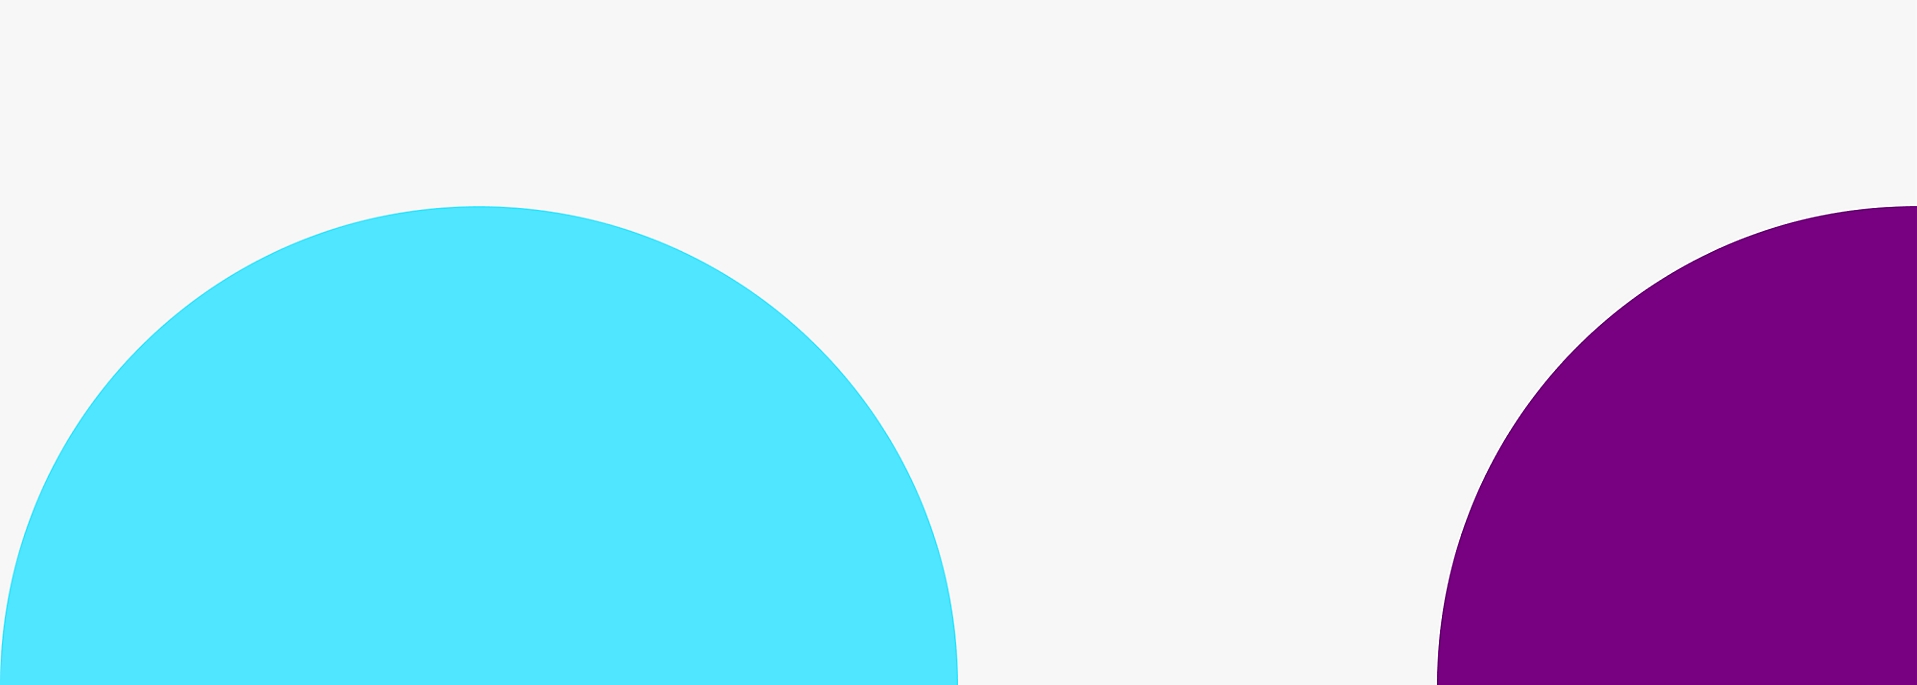 Два больших перекрывающихся круга: синий круг слева и лиловый круг справа 